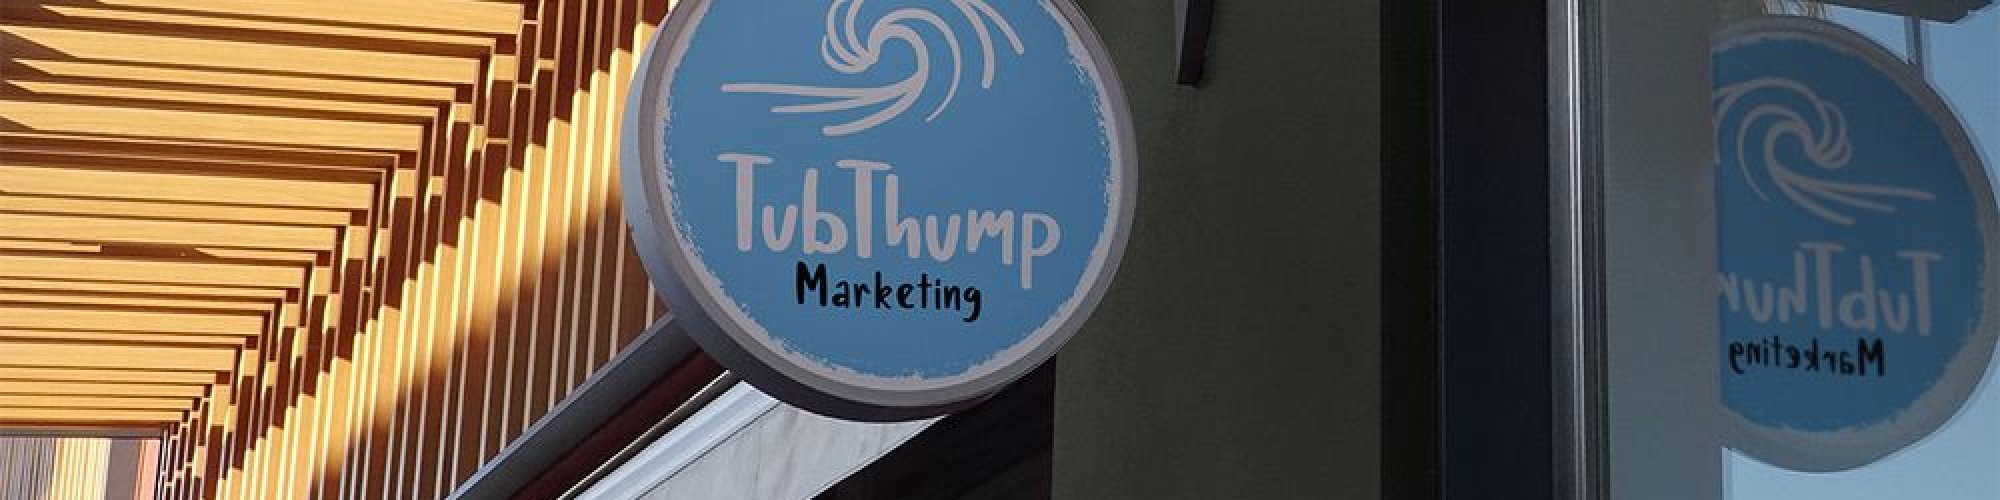 Tub-Thump Marketing